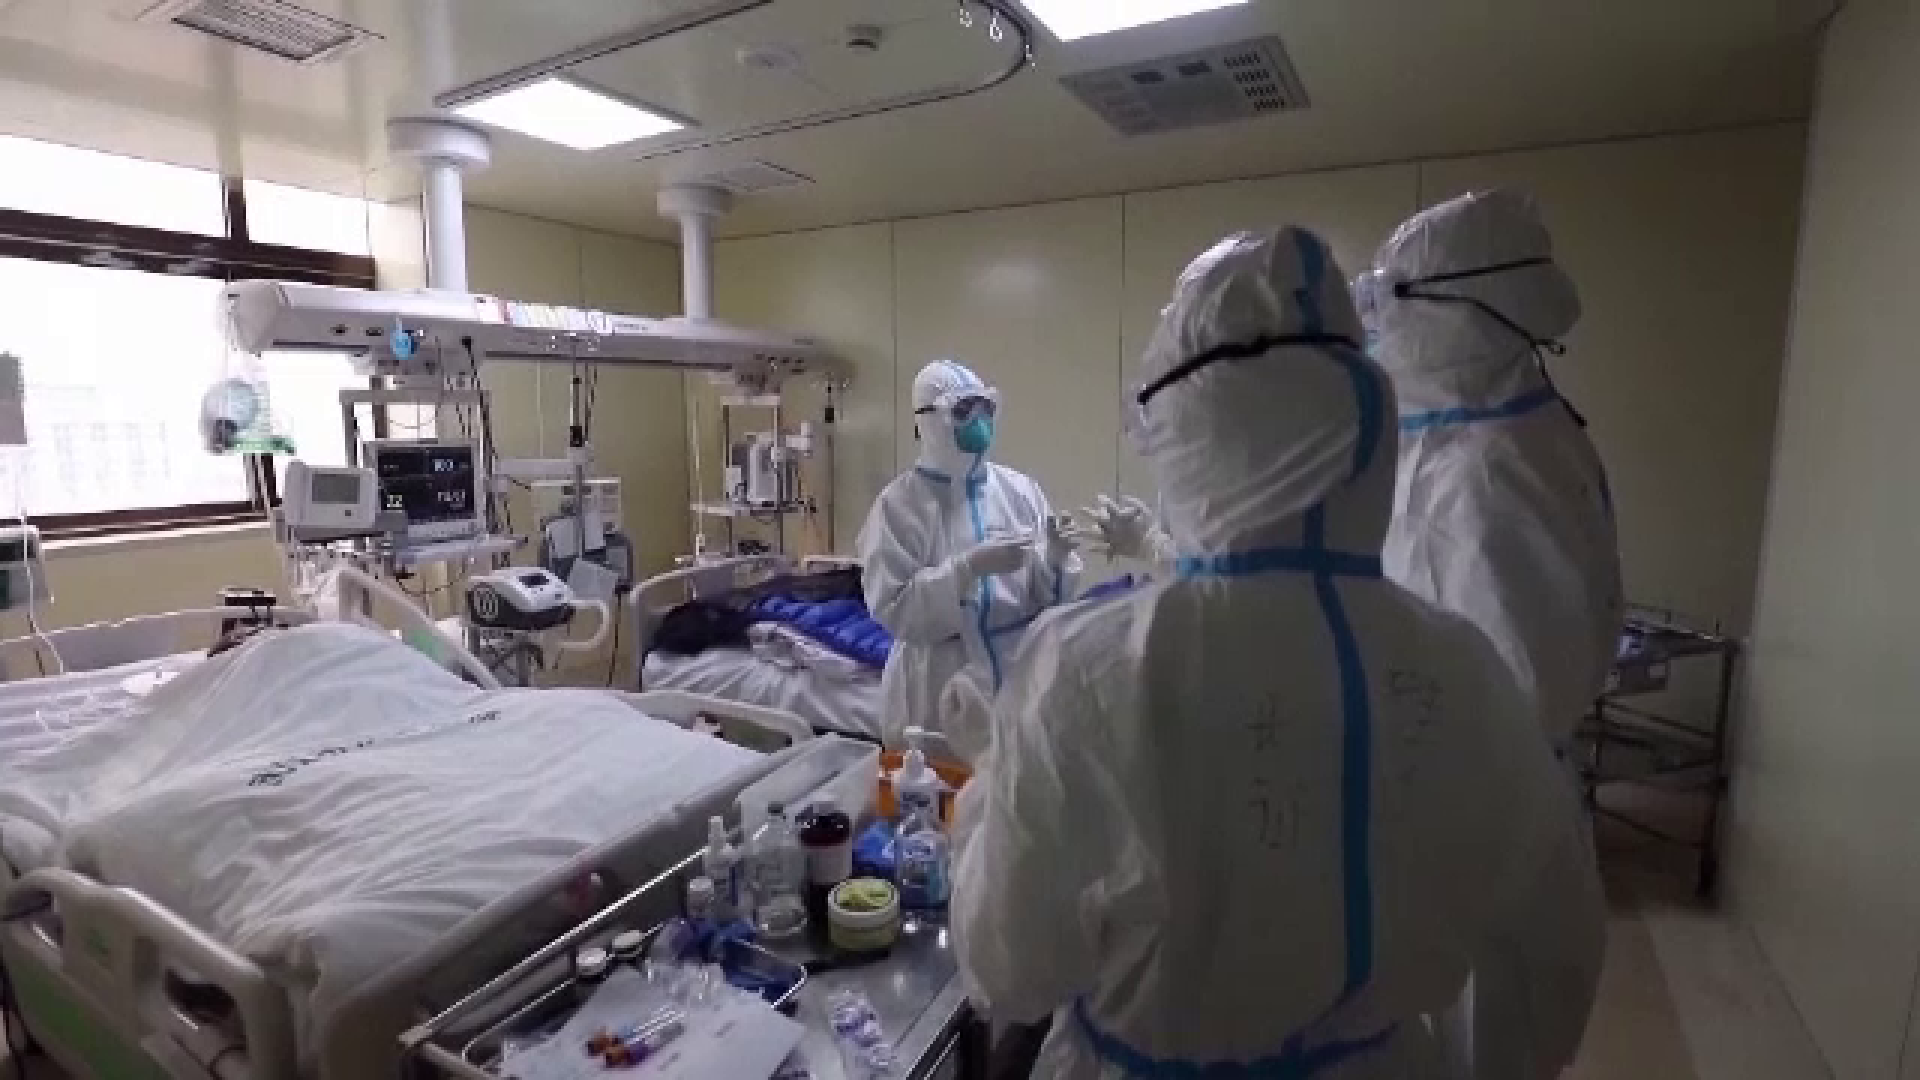 Spitalele Covid au rămas fără locuri la terapie intensivă, autoritățile folosesc unitățile modulare. Prognoza este sumbră